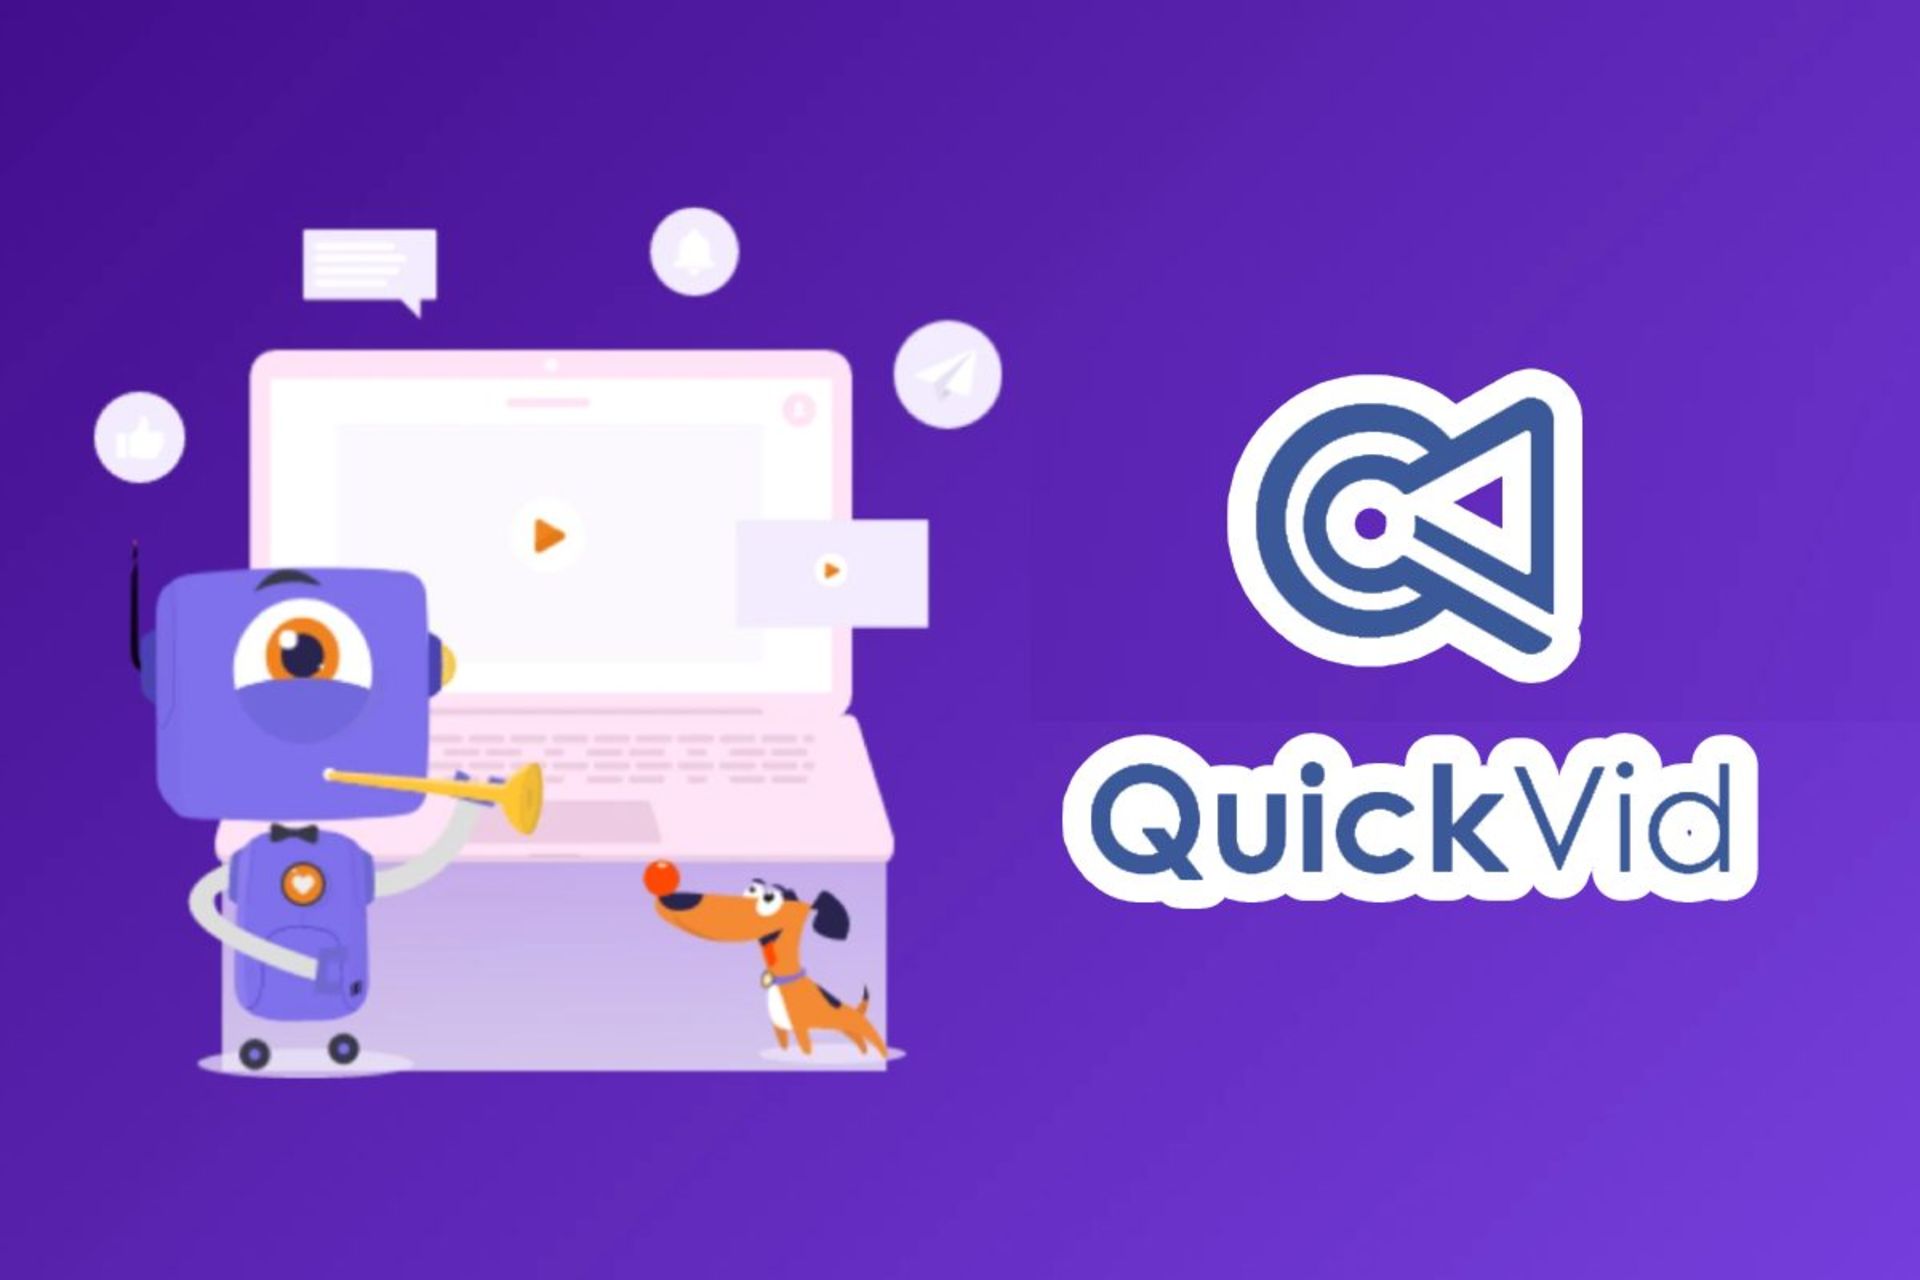 هوش مصنوعی QuickVid برای تبدیل متن به ویدیو